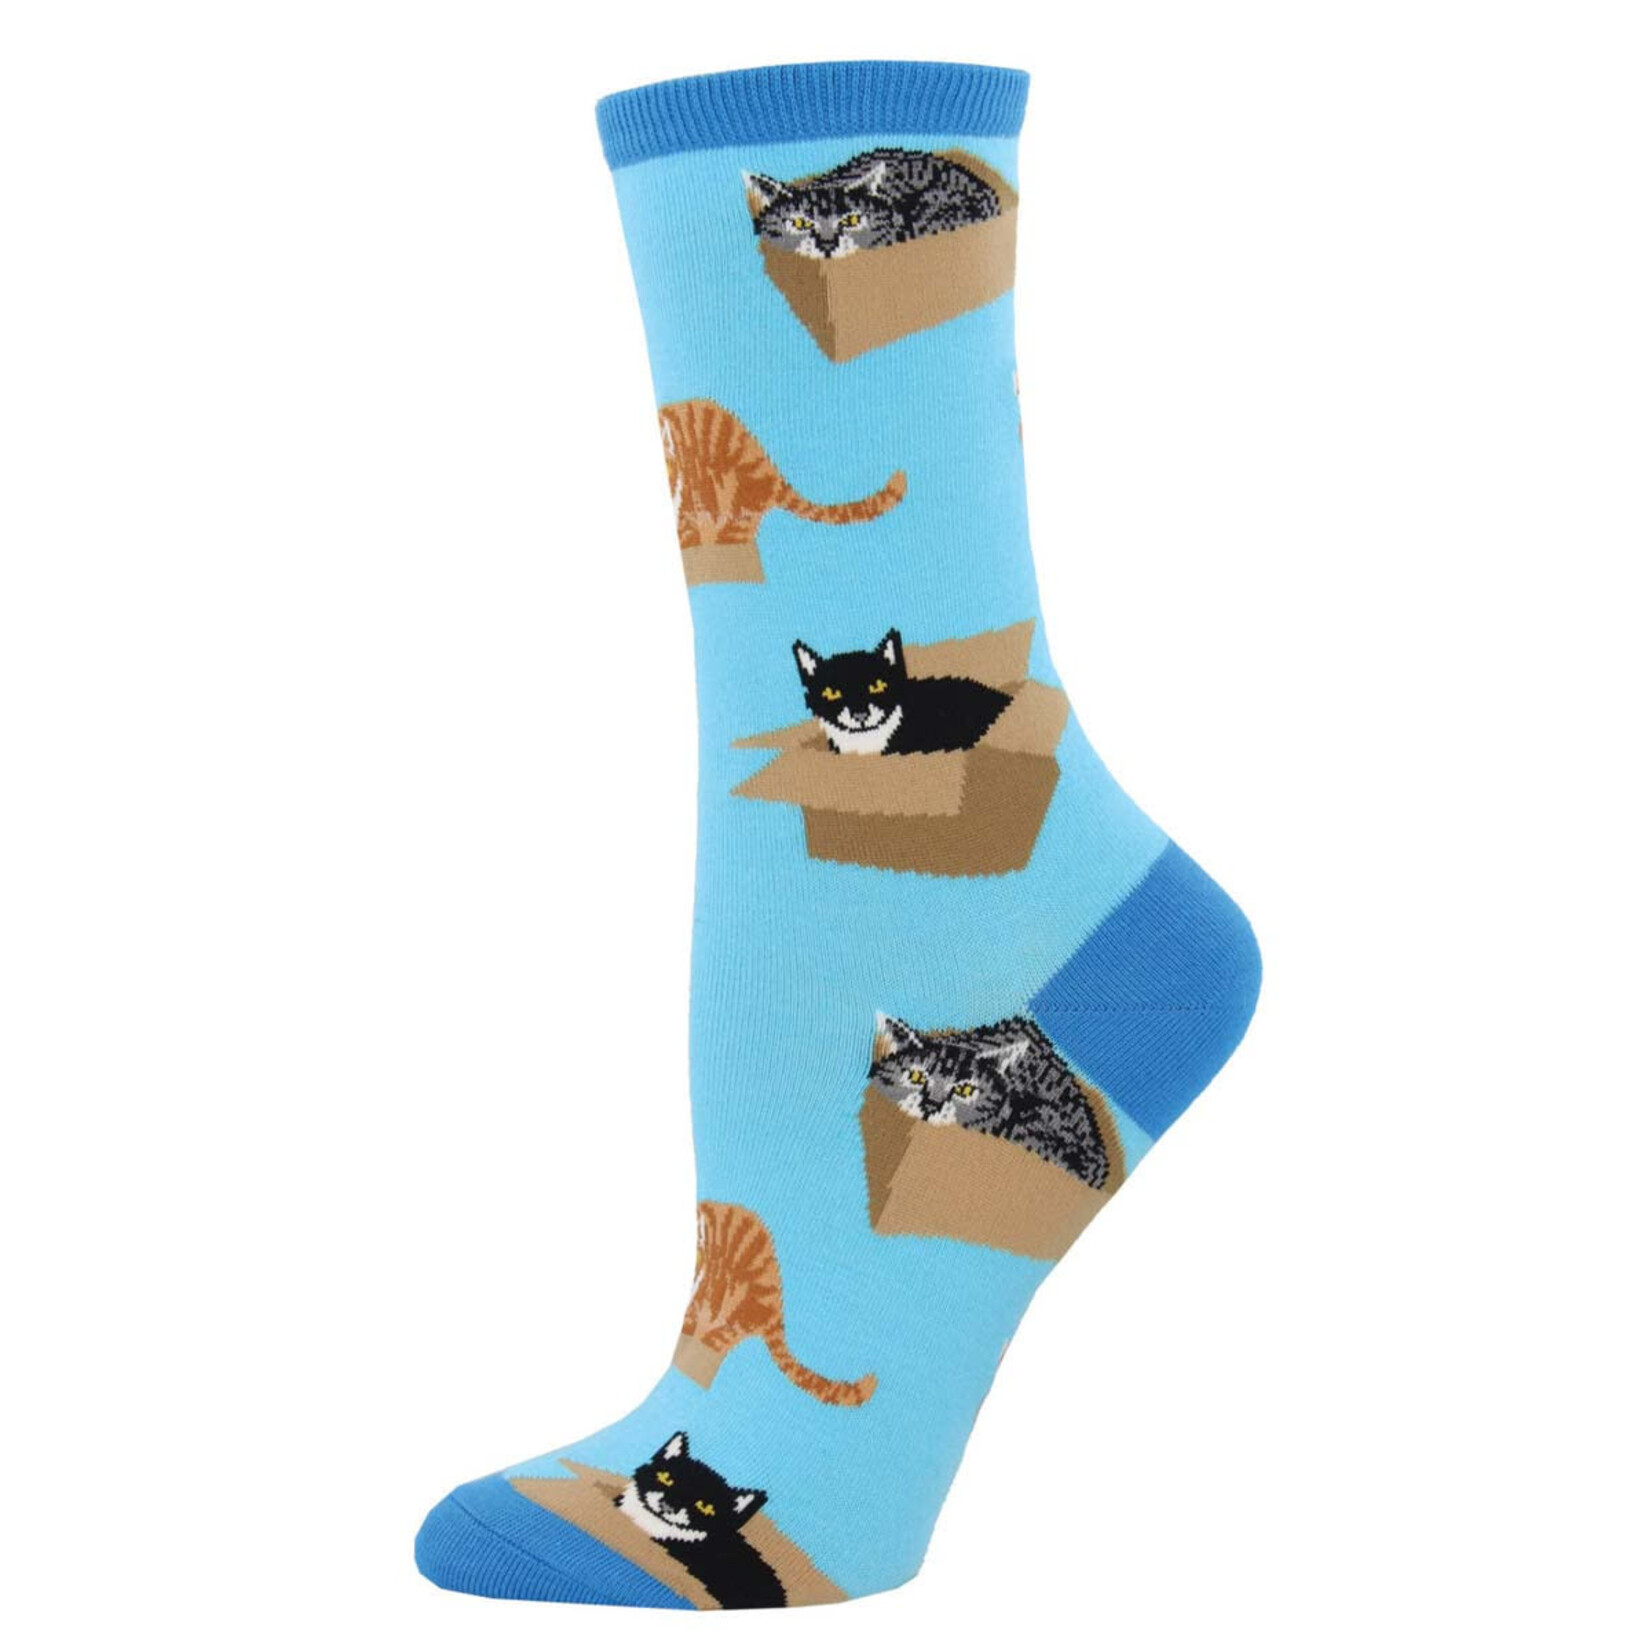 Socks Women Cat In A Box Socks